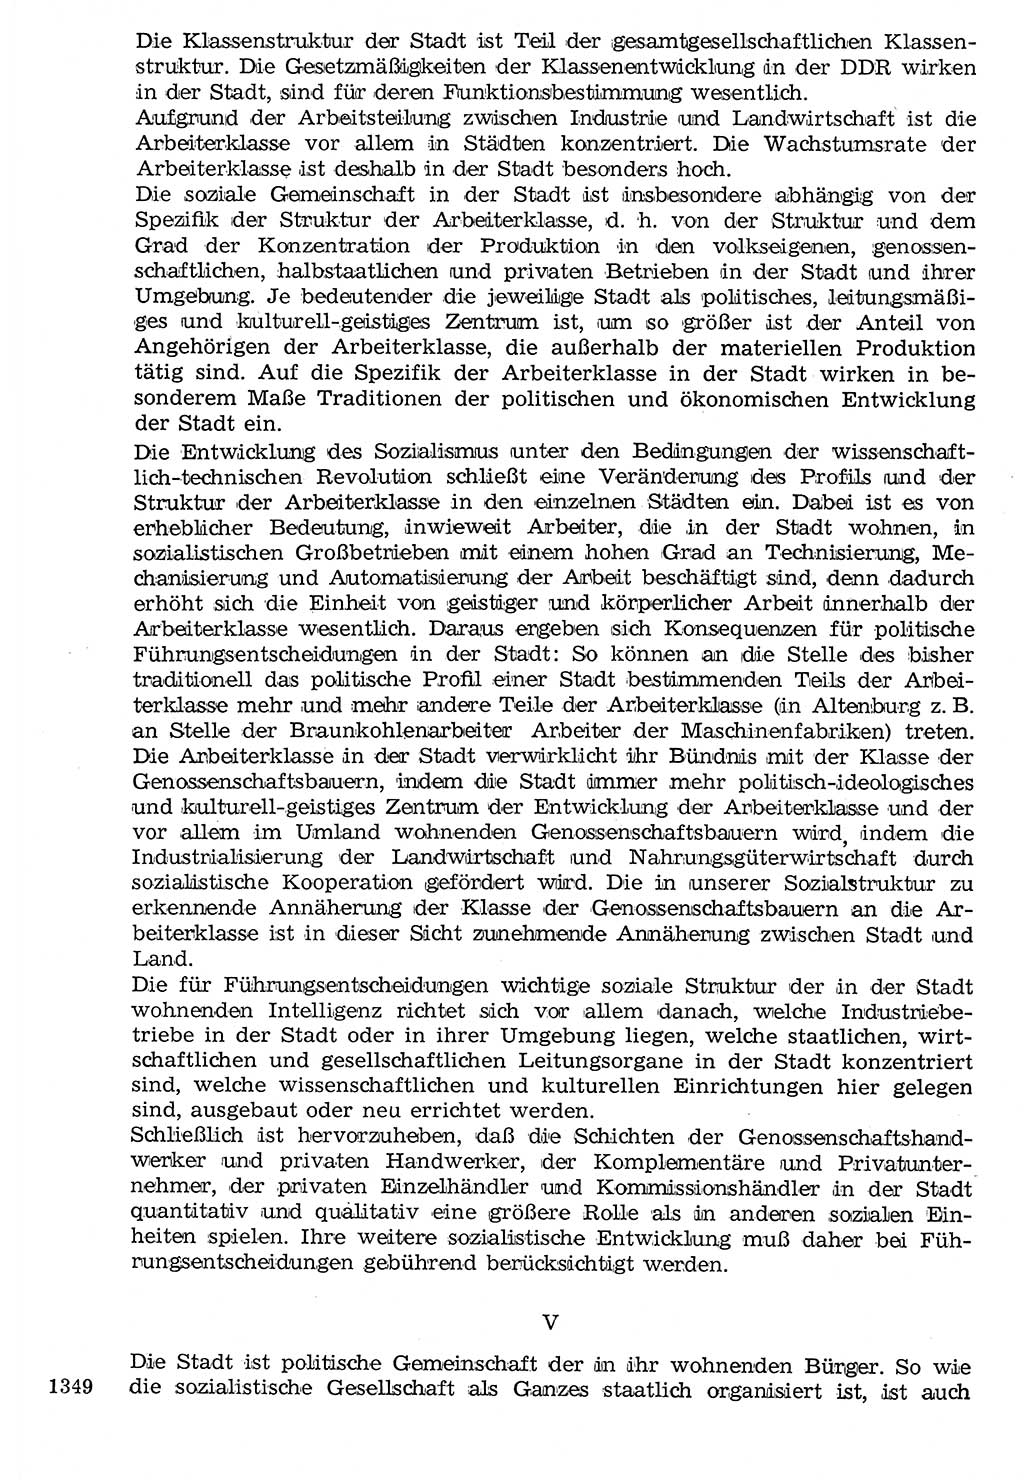 Staat und Recht (StuR), 17. Jahrgang [Deutsche Demokratische Republik (DDR)] 1968, Seite 1349 (StuR DDR 1968, S. 1349)